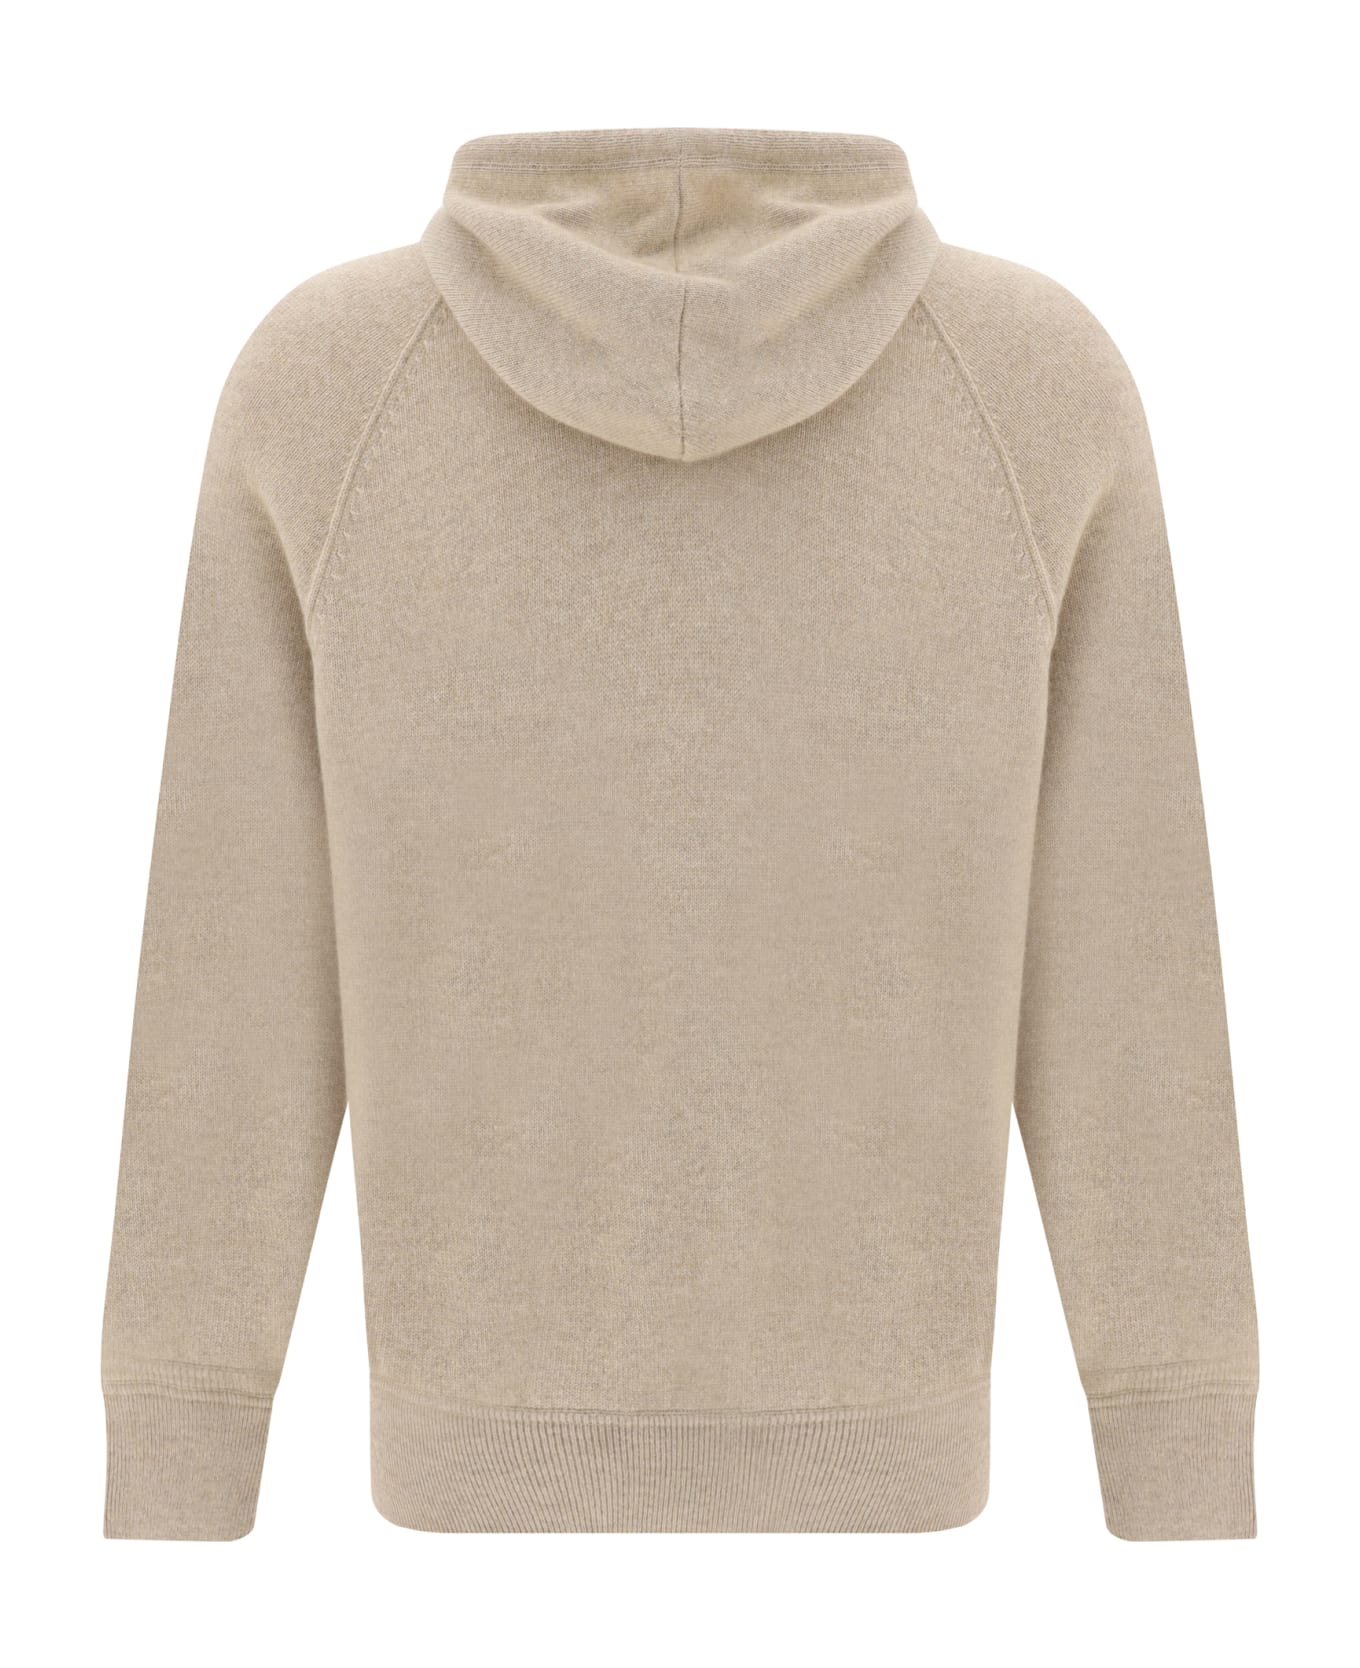 Brunello Cucinelli Cashmere Hooded Sweater - Beige フリース